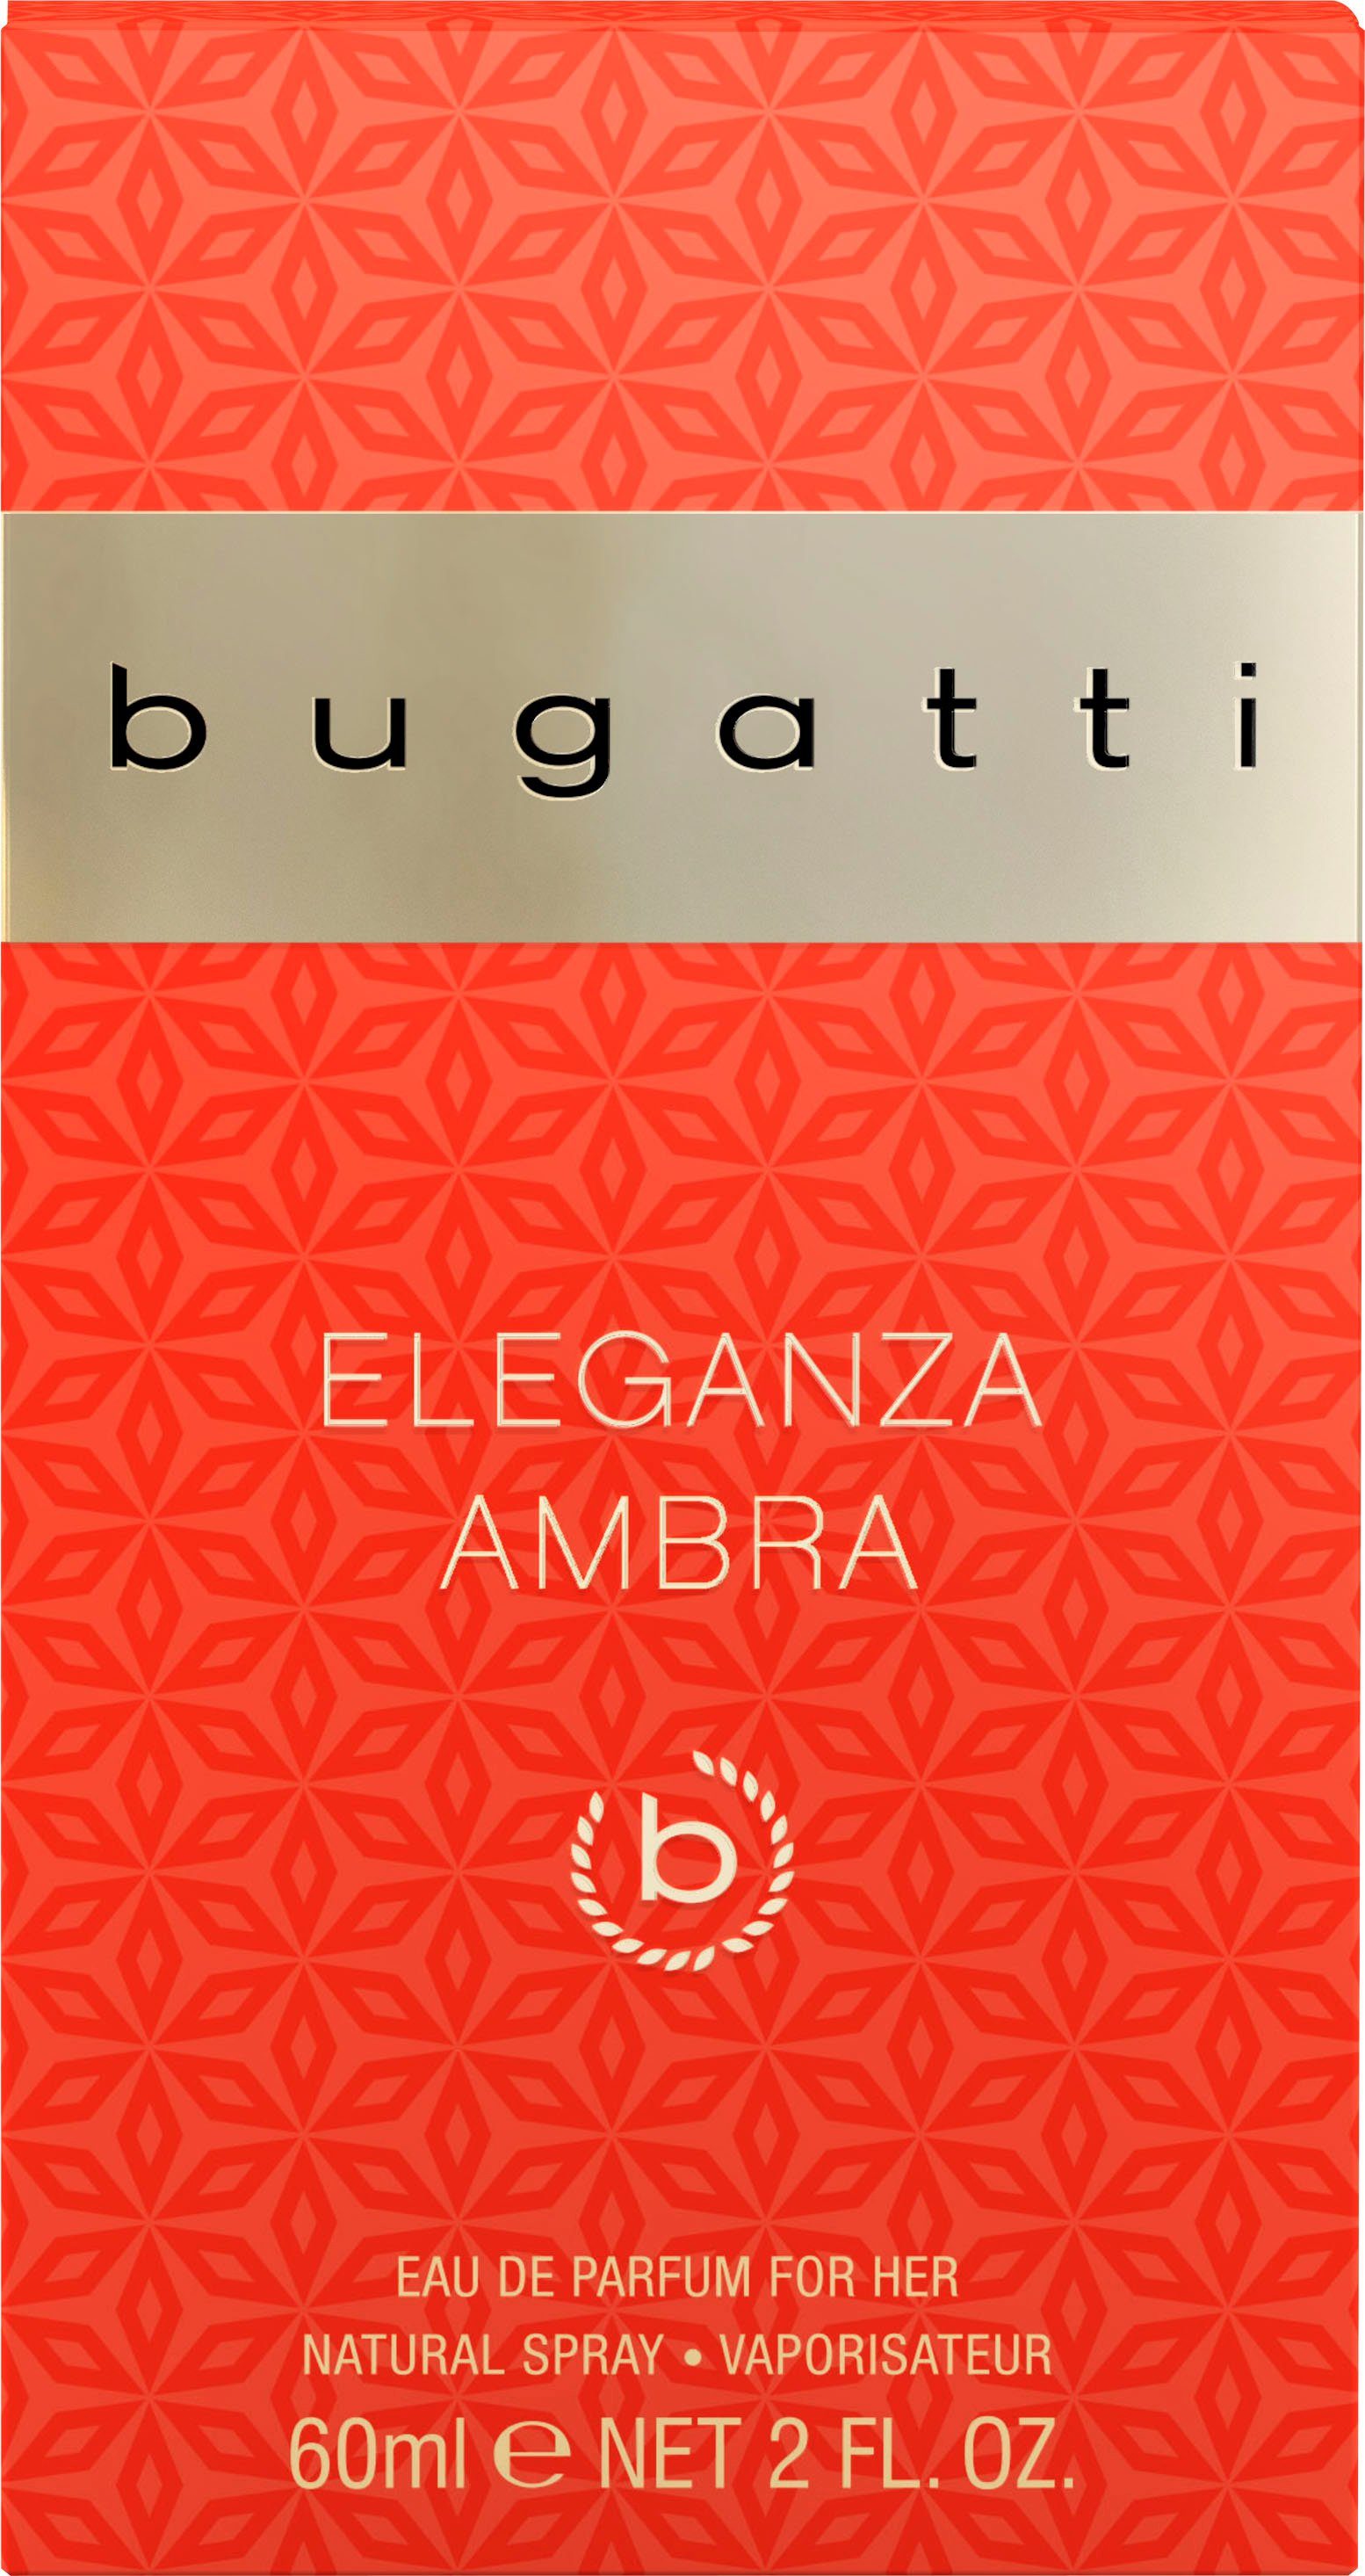 bugatti Eau de Ambra ml Parfum EdP for 60 BUGATTI Eleganza her